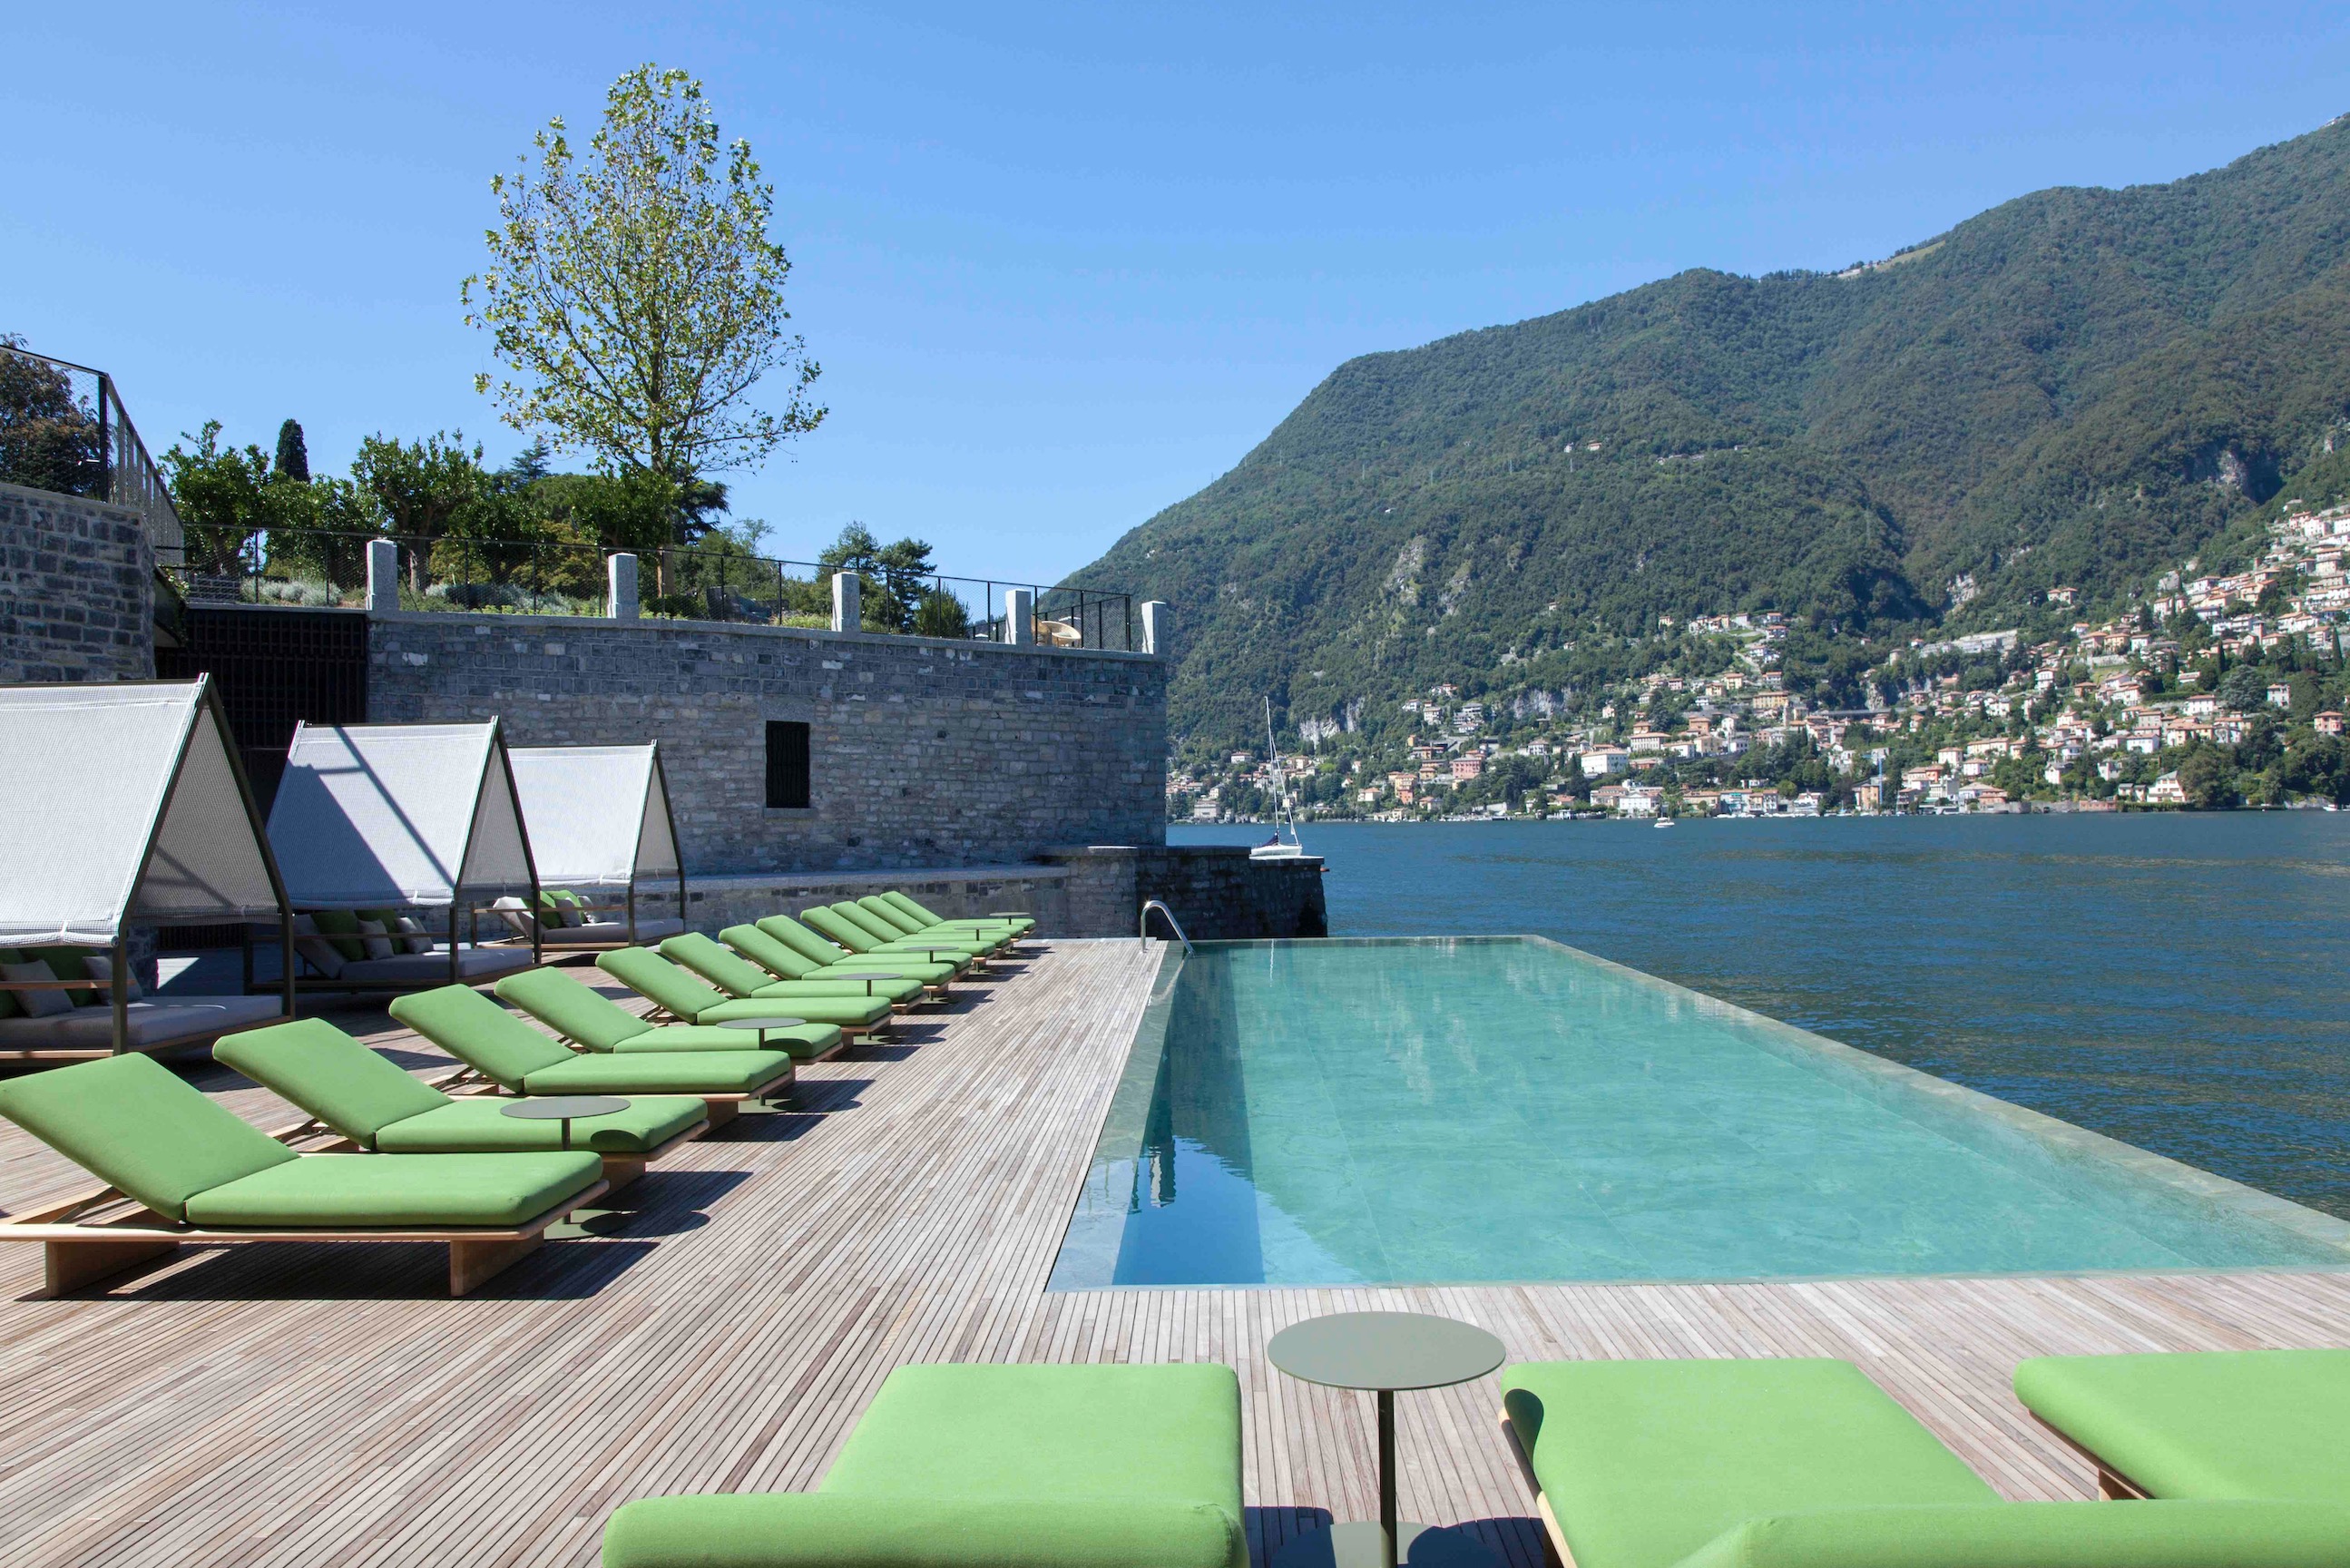 Il Sereno – ett modernt lyxhotell vid den legendariska Comosjön